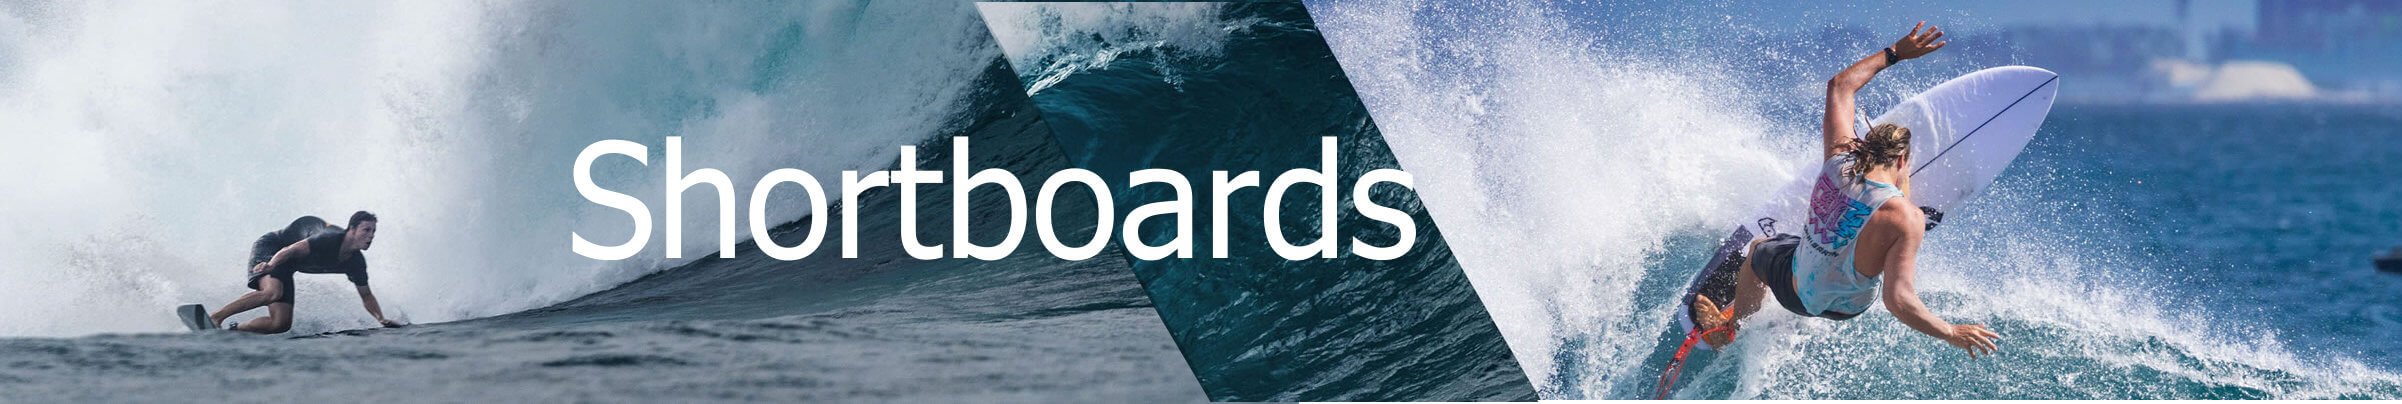 Shortboard Guide Surfbrett Kaufberatung Header